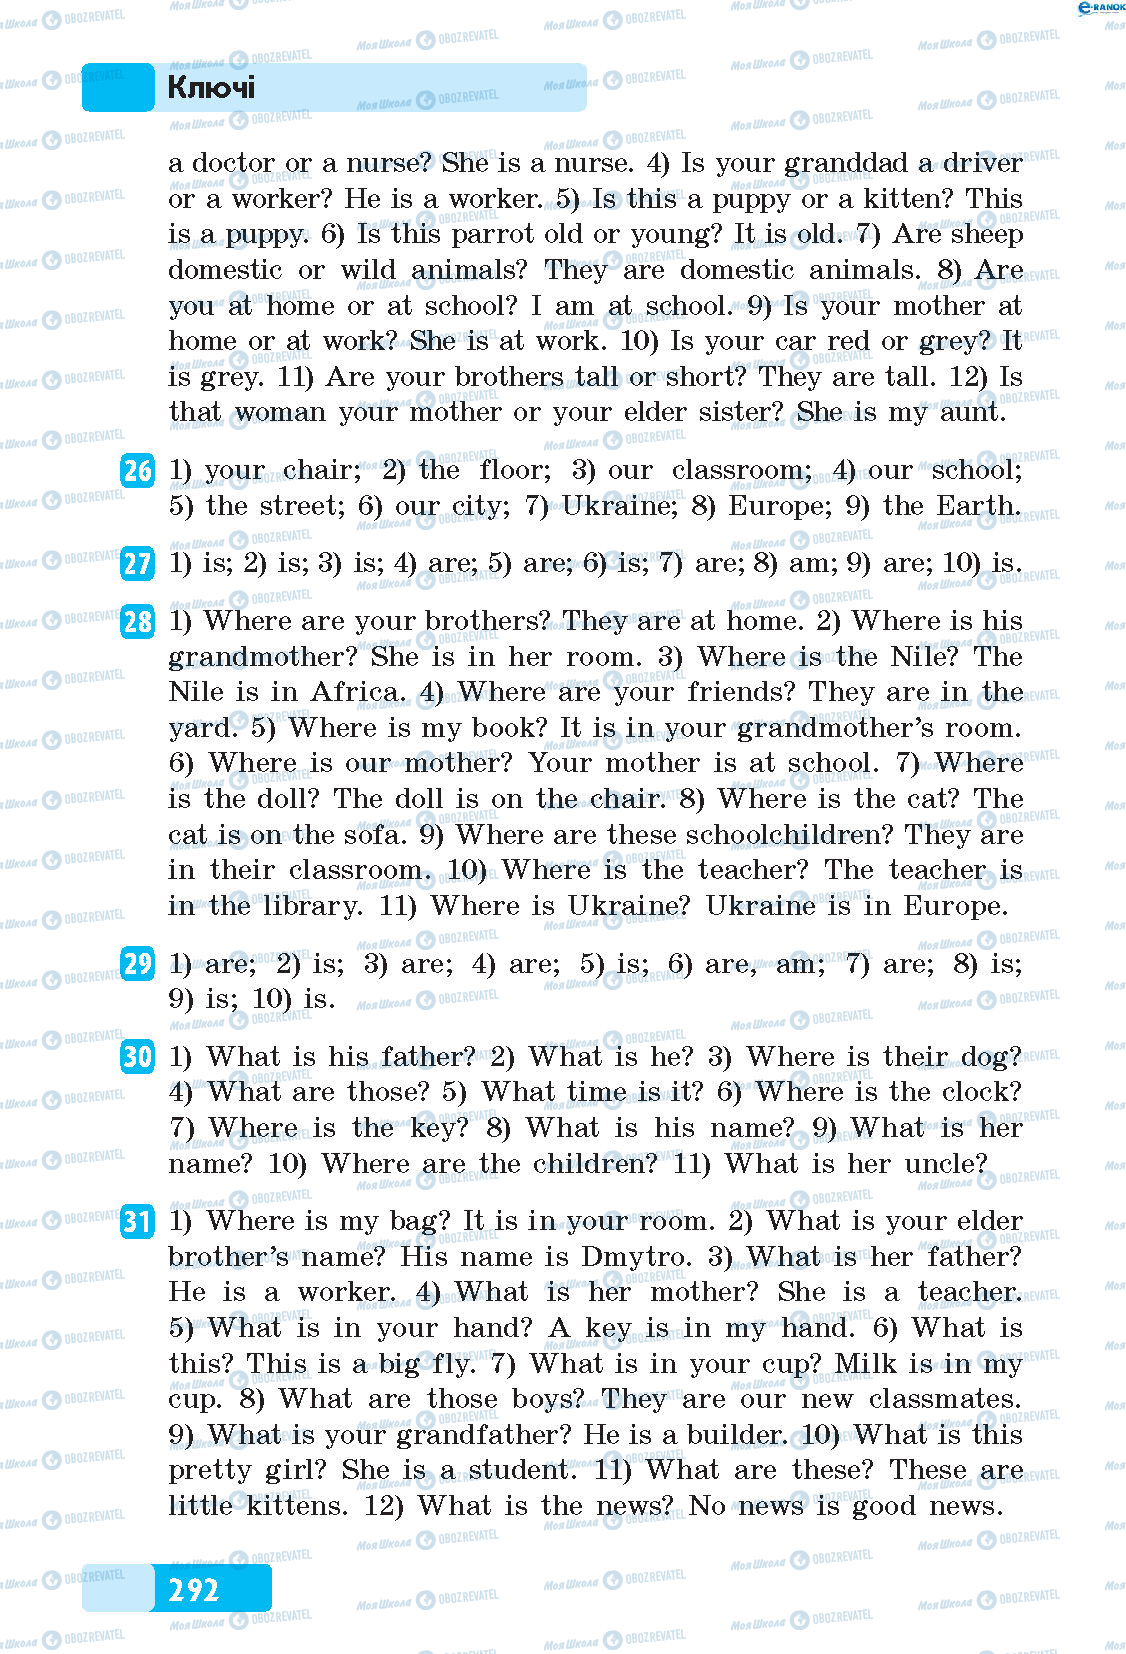 ГДЗ Англійська мова 5 клас сторінка 26-31